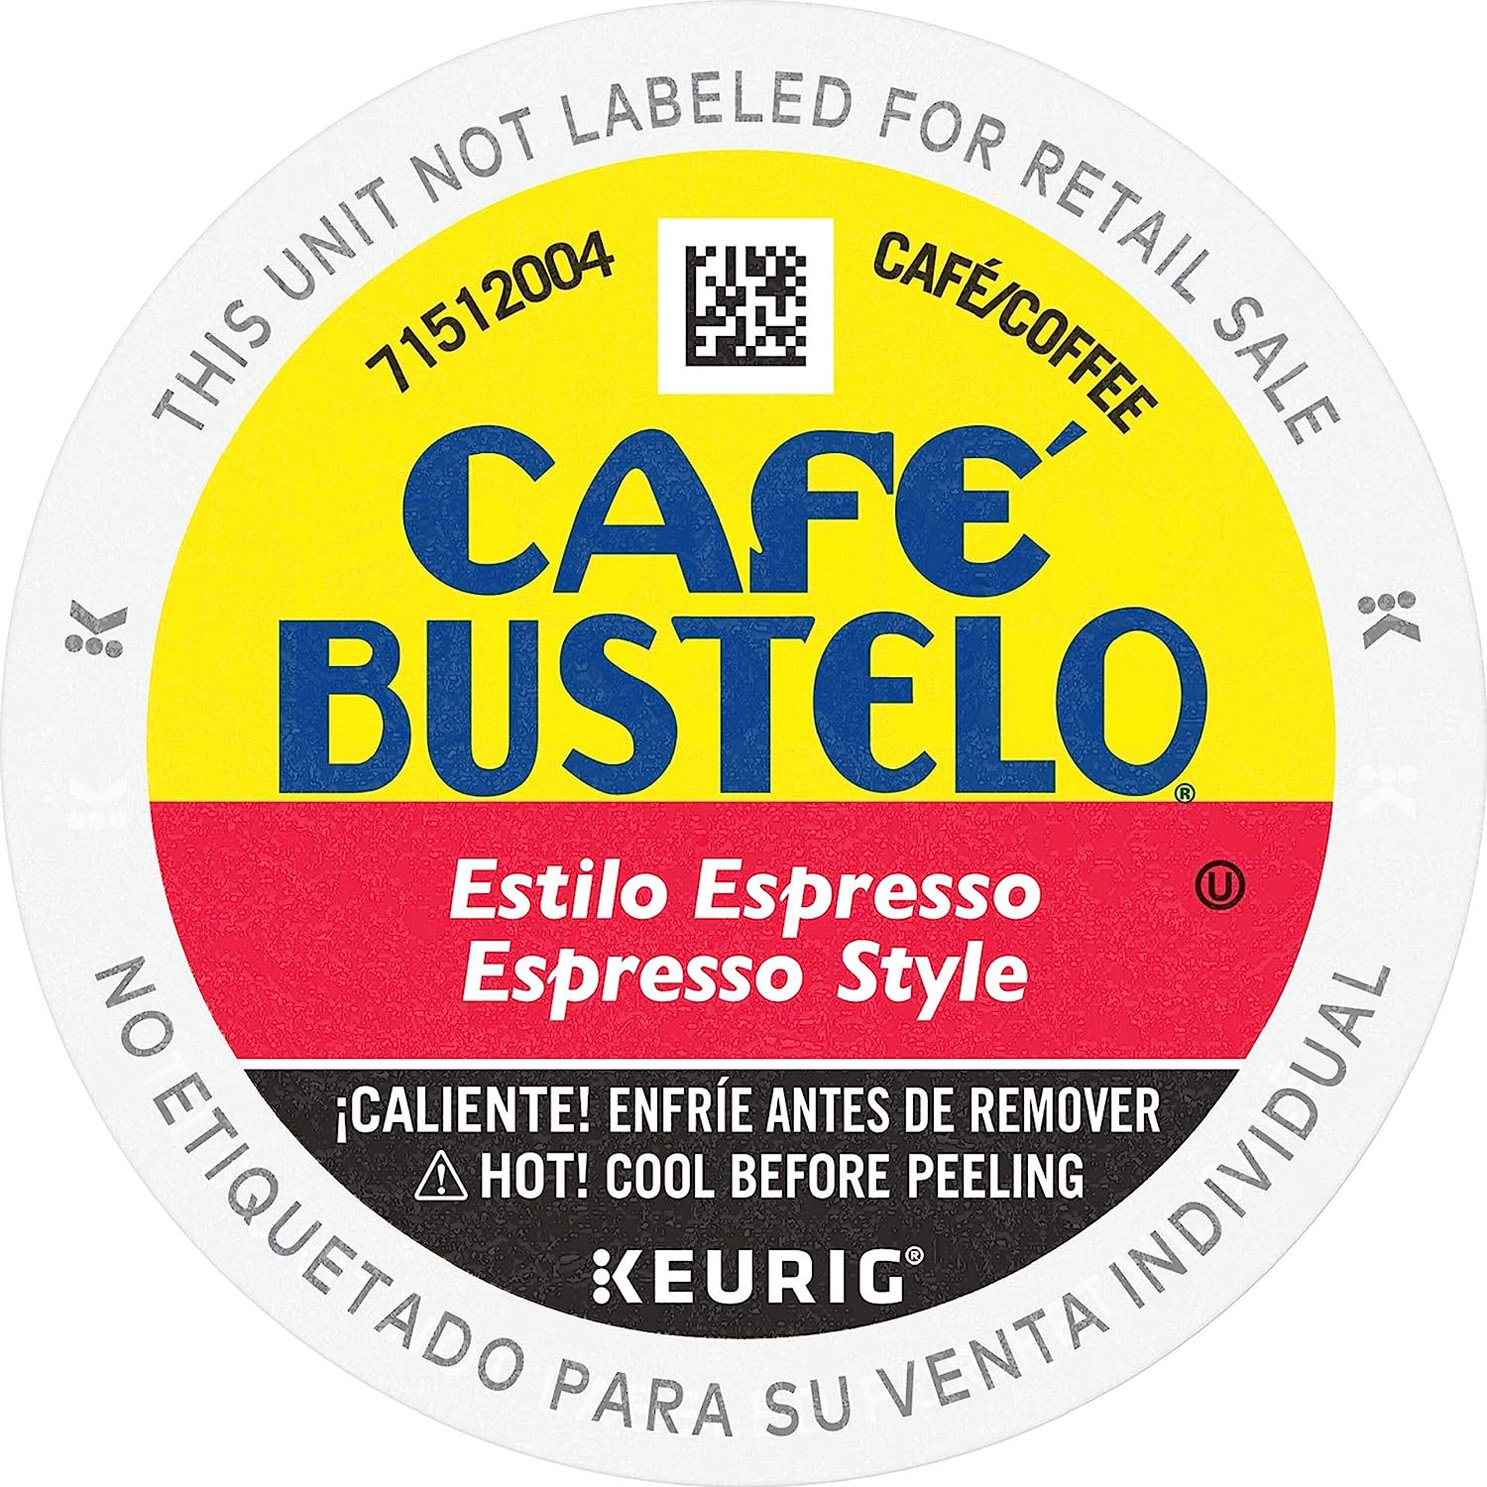 Café Bustelo Espresso Style Dark Roast Coffee, 72 Keurig K-Cup Pods